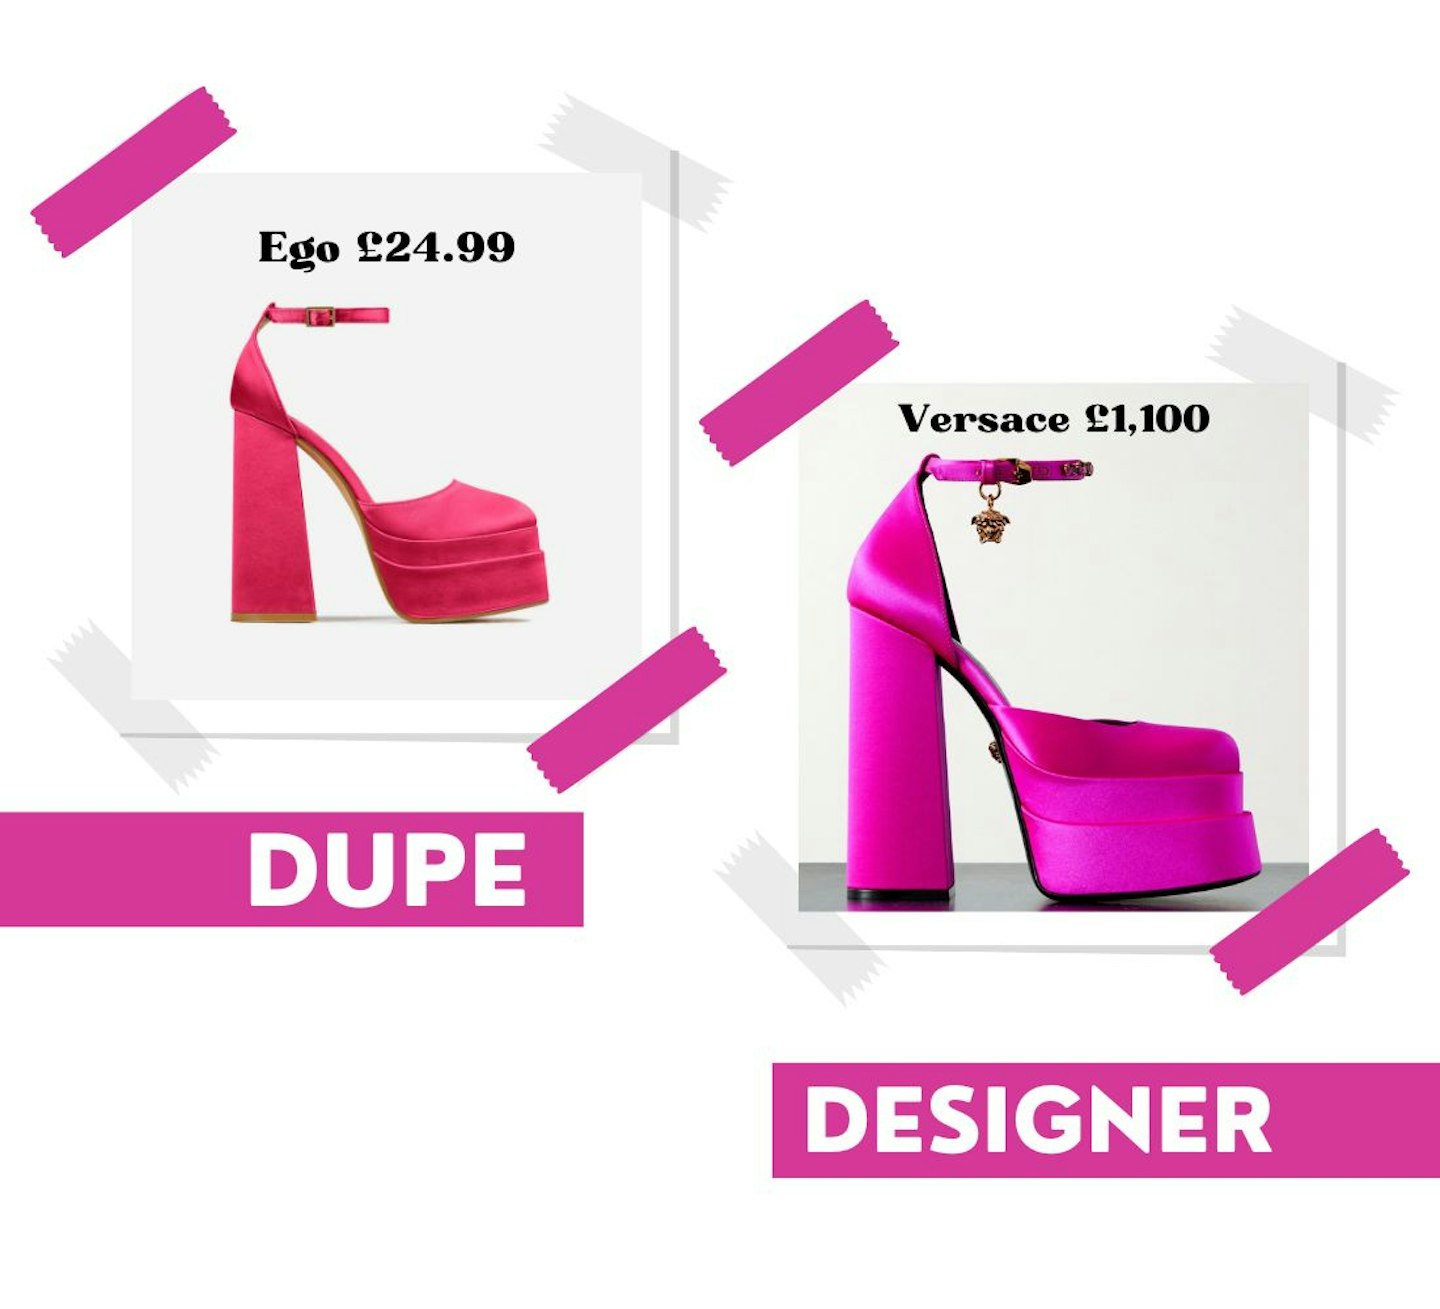 Ego and Versace pink platform heels